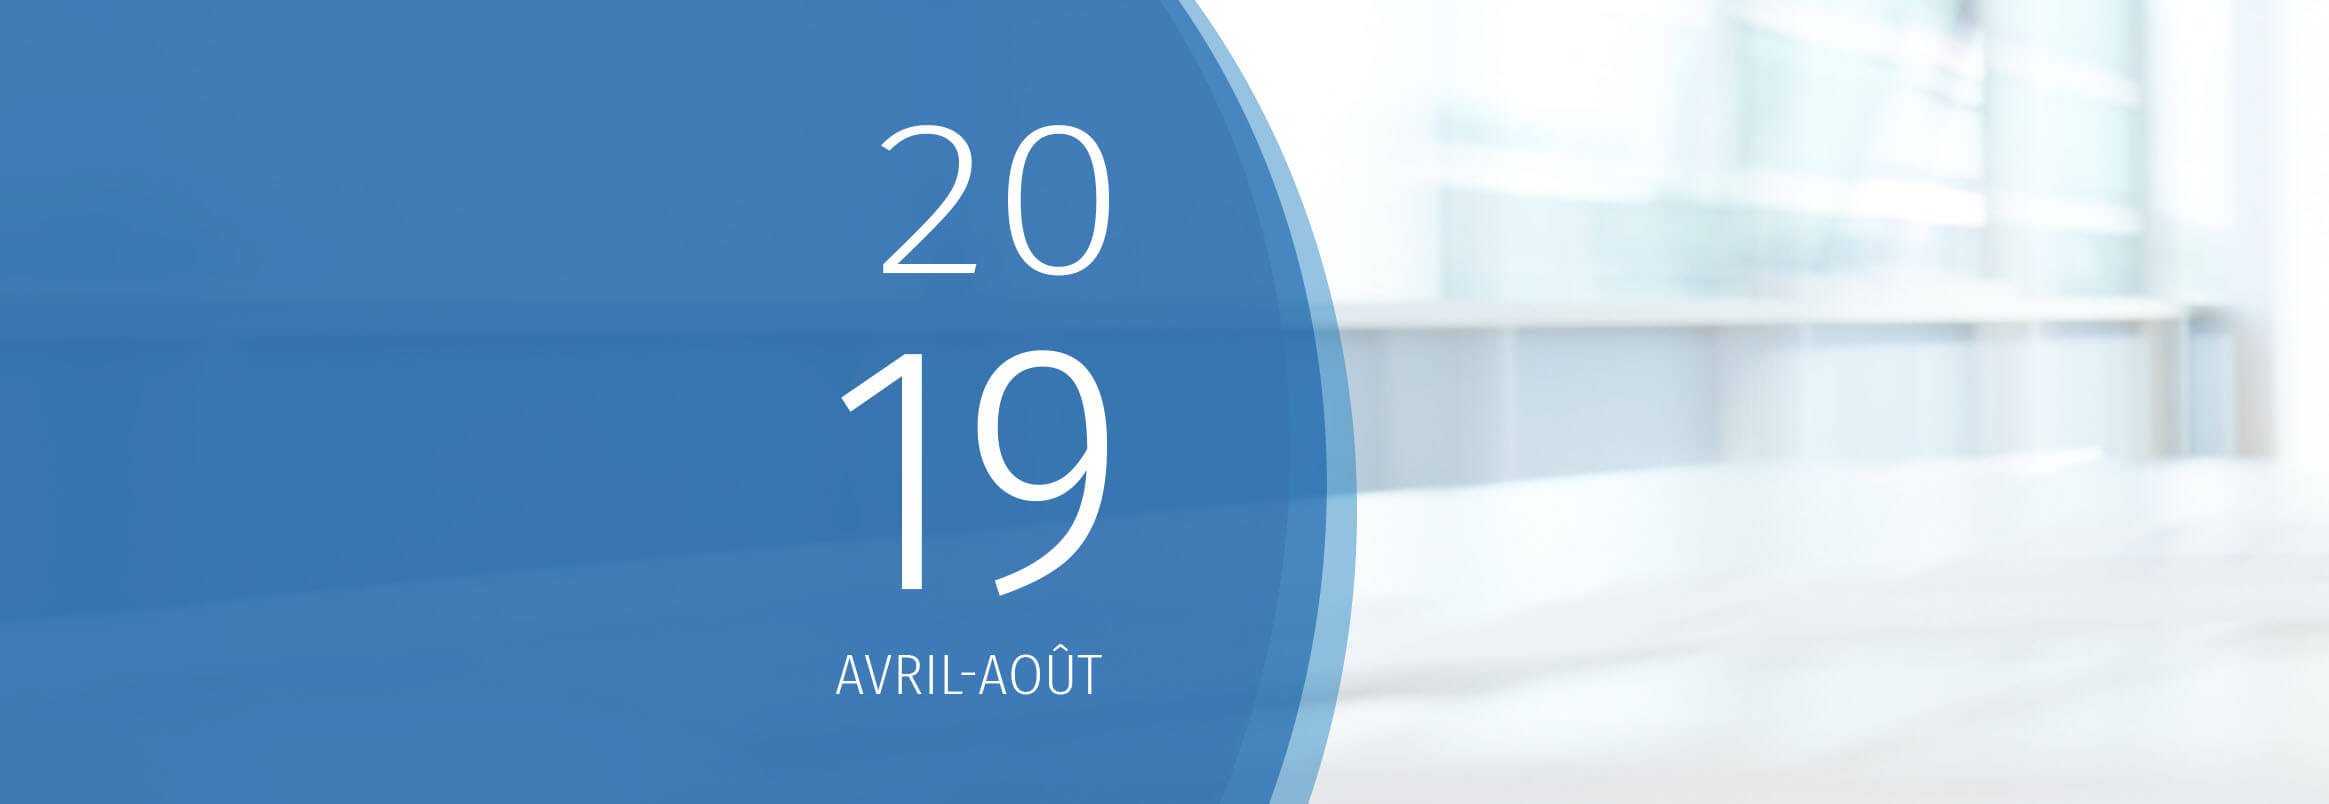 Bannière - Rapport annuel 2018-2019